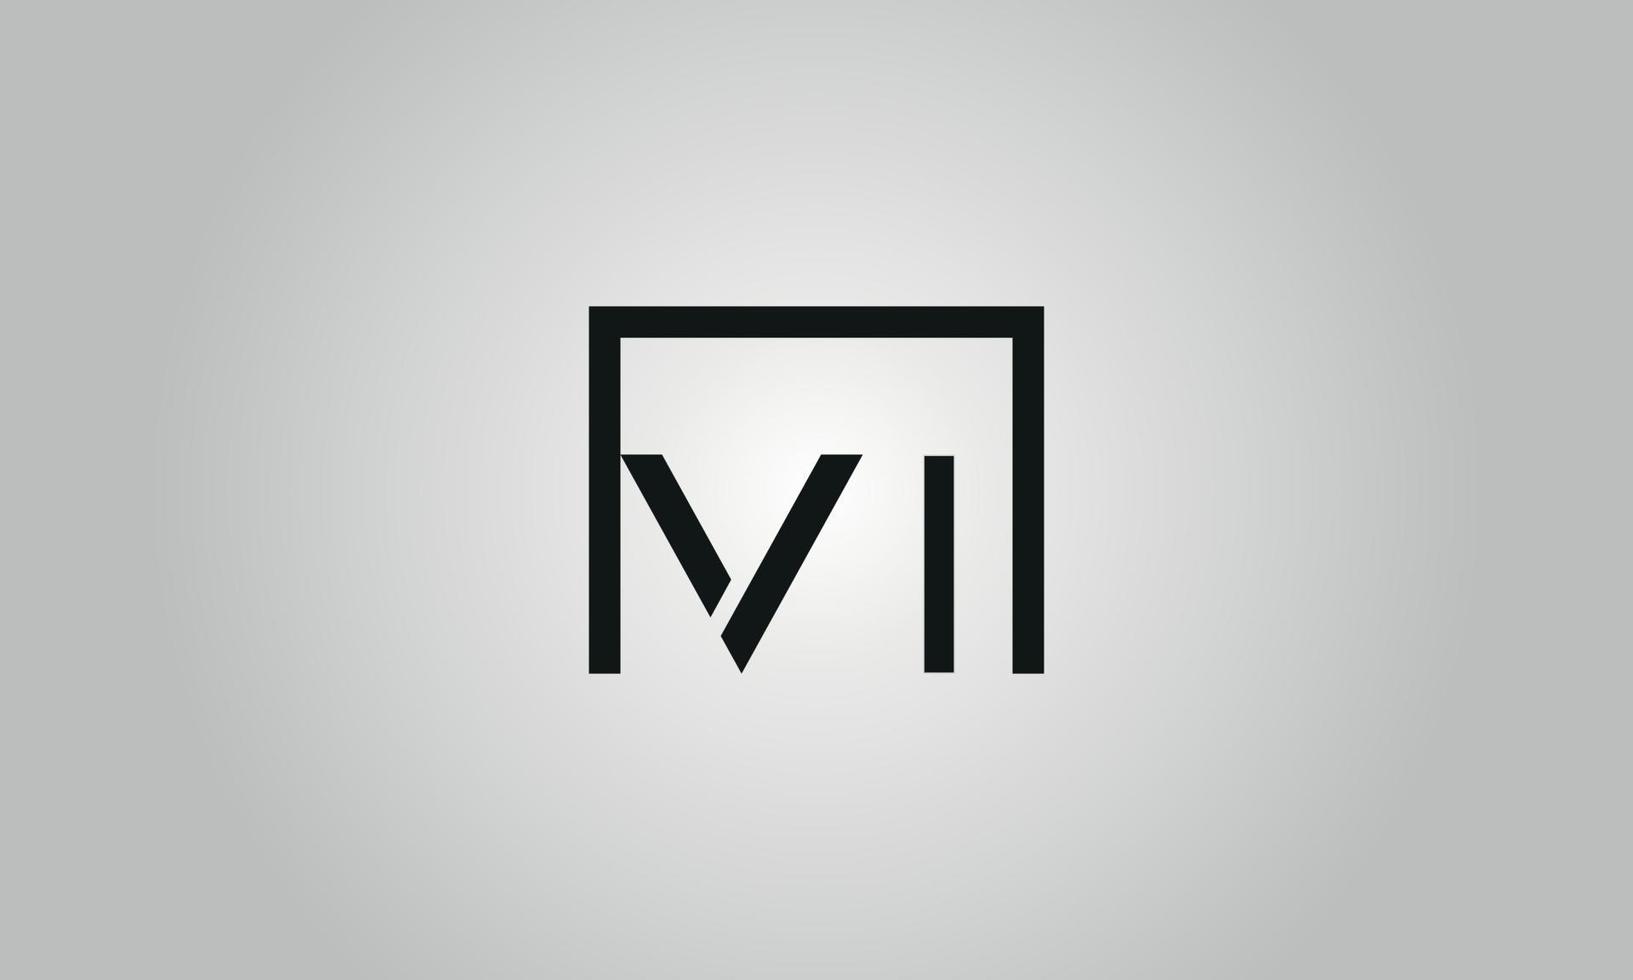 Buchstabe VI-Logo-Design. vi-Logo mit quadratischer Form in schwarzen Farben Vektor kostenlose Vektorvorlage.